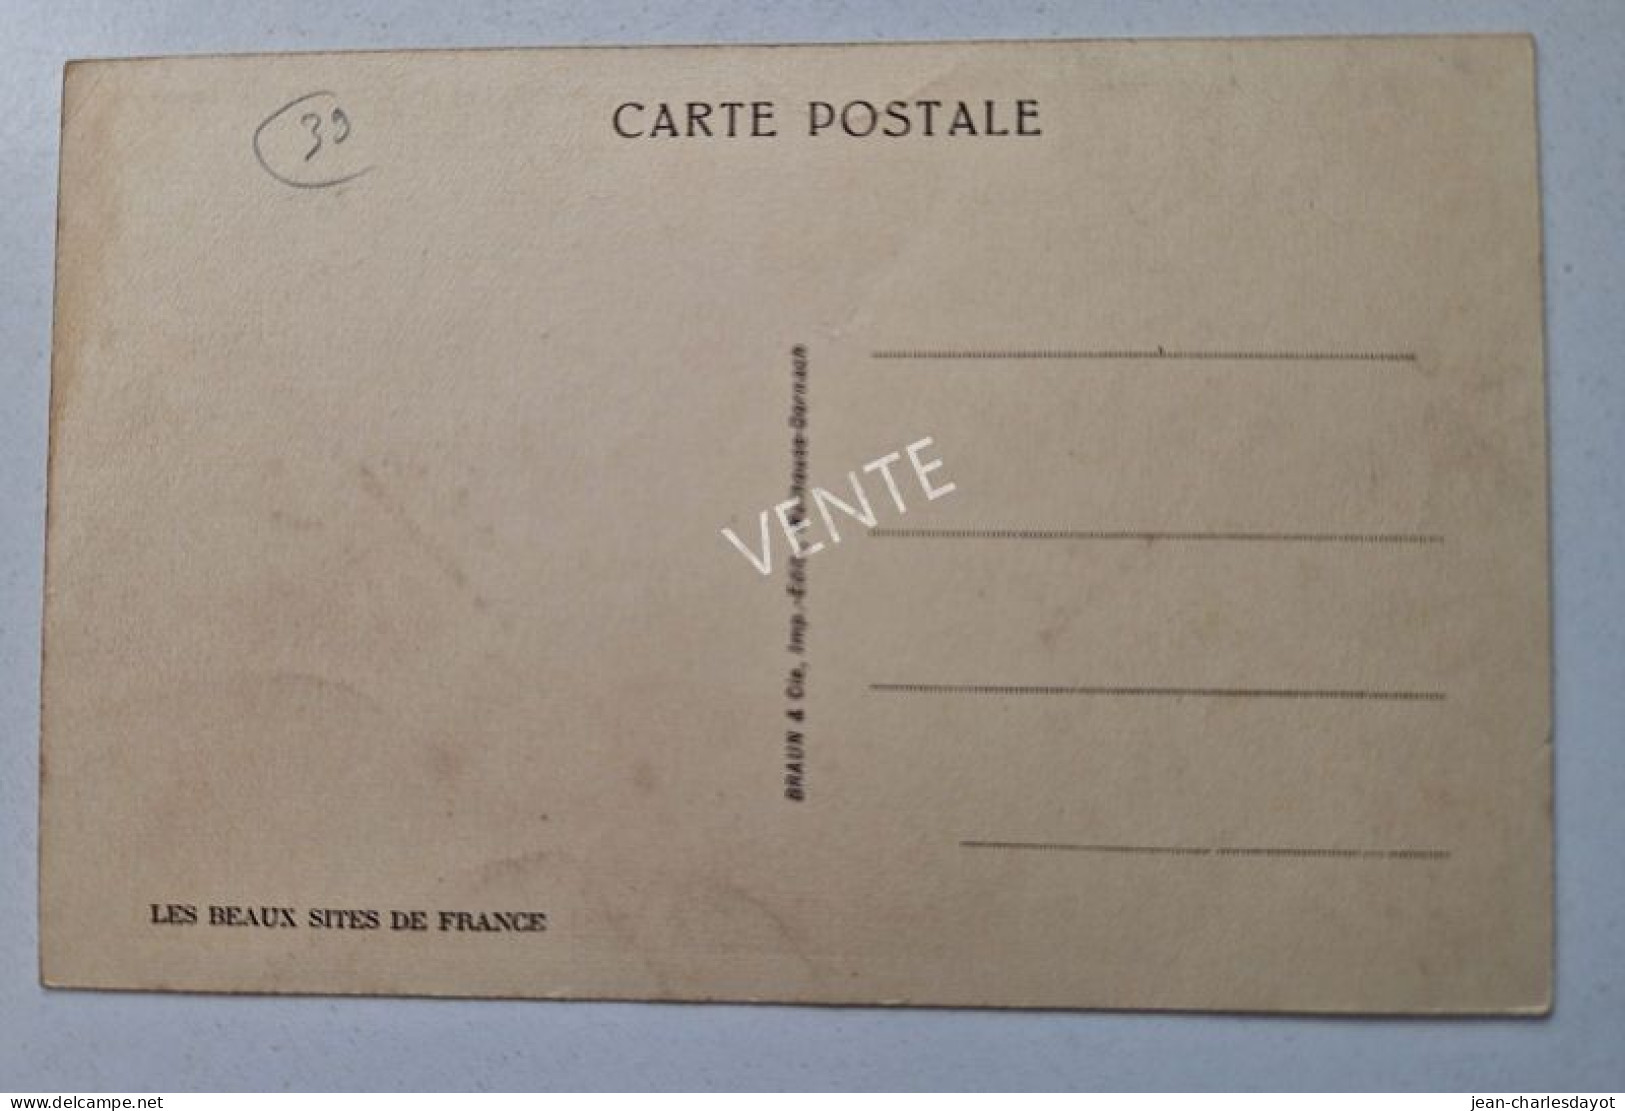 Carte Postale ORGELET : Clocher De L'église - Orgelet